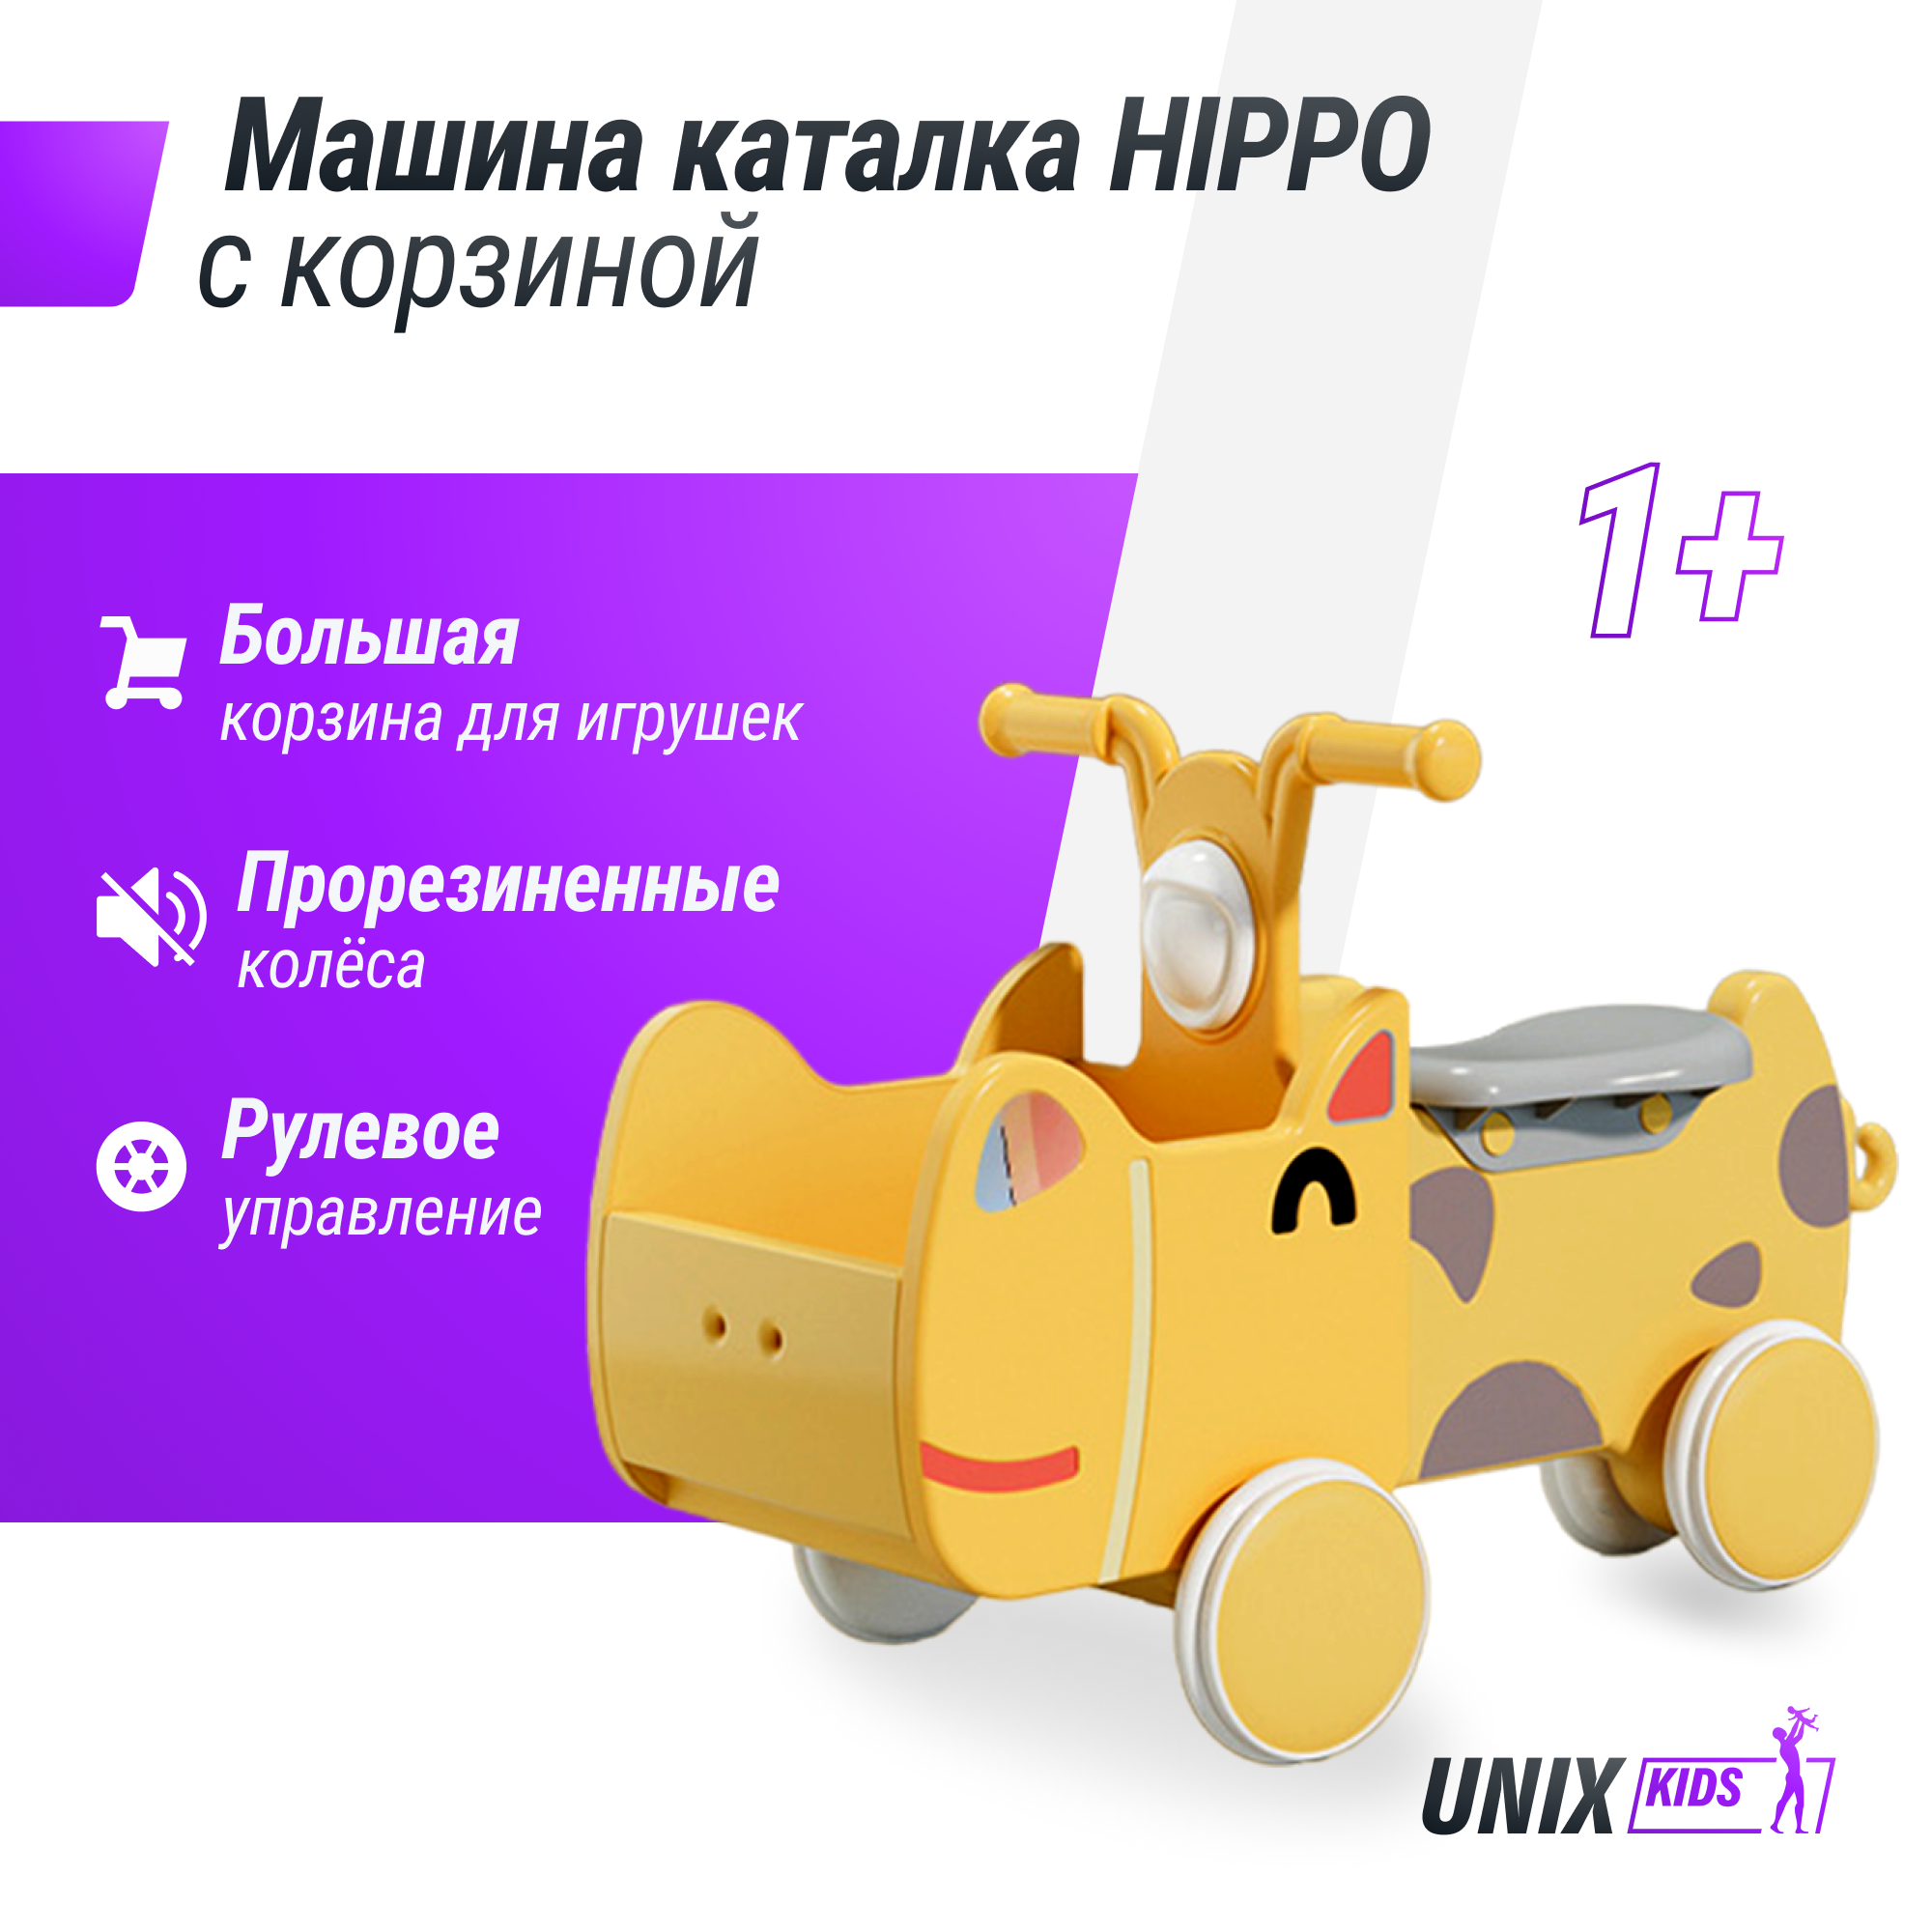 Машинка - каталка для детей с корзиной для игрушек UNIX Kids Hippo с ручками pituso стеллаж для игрушек с ящиками машинка max 2 яруса